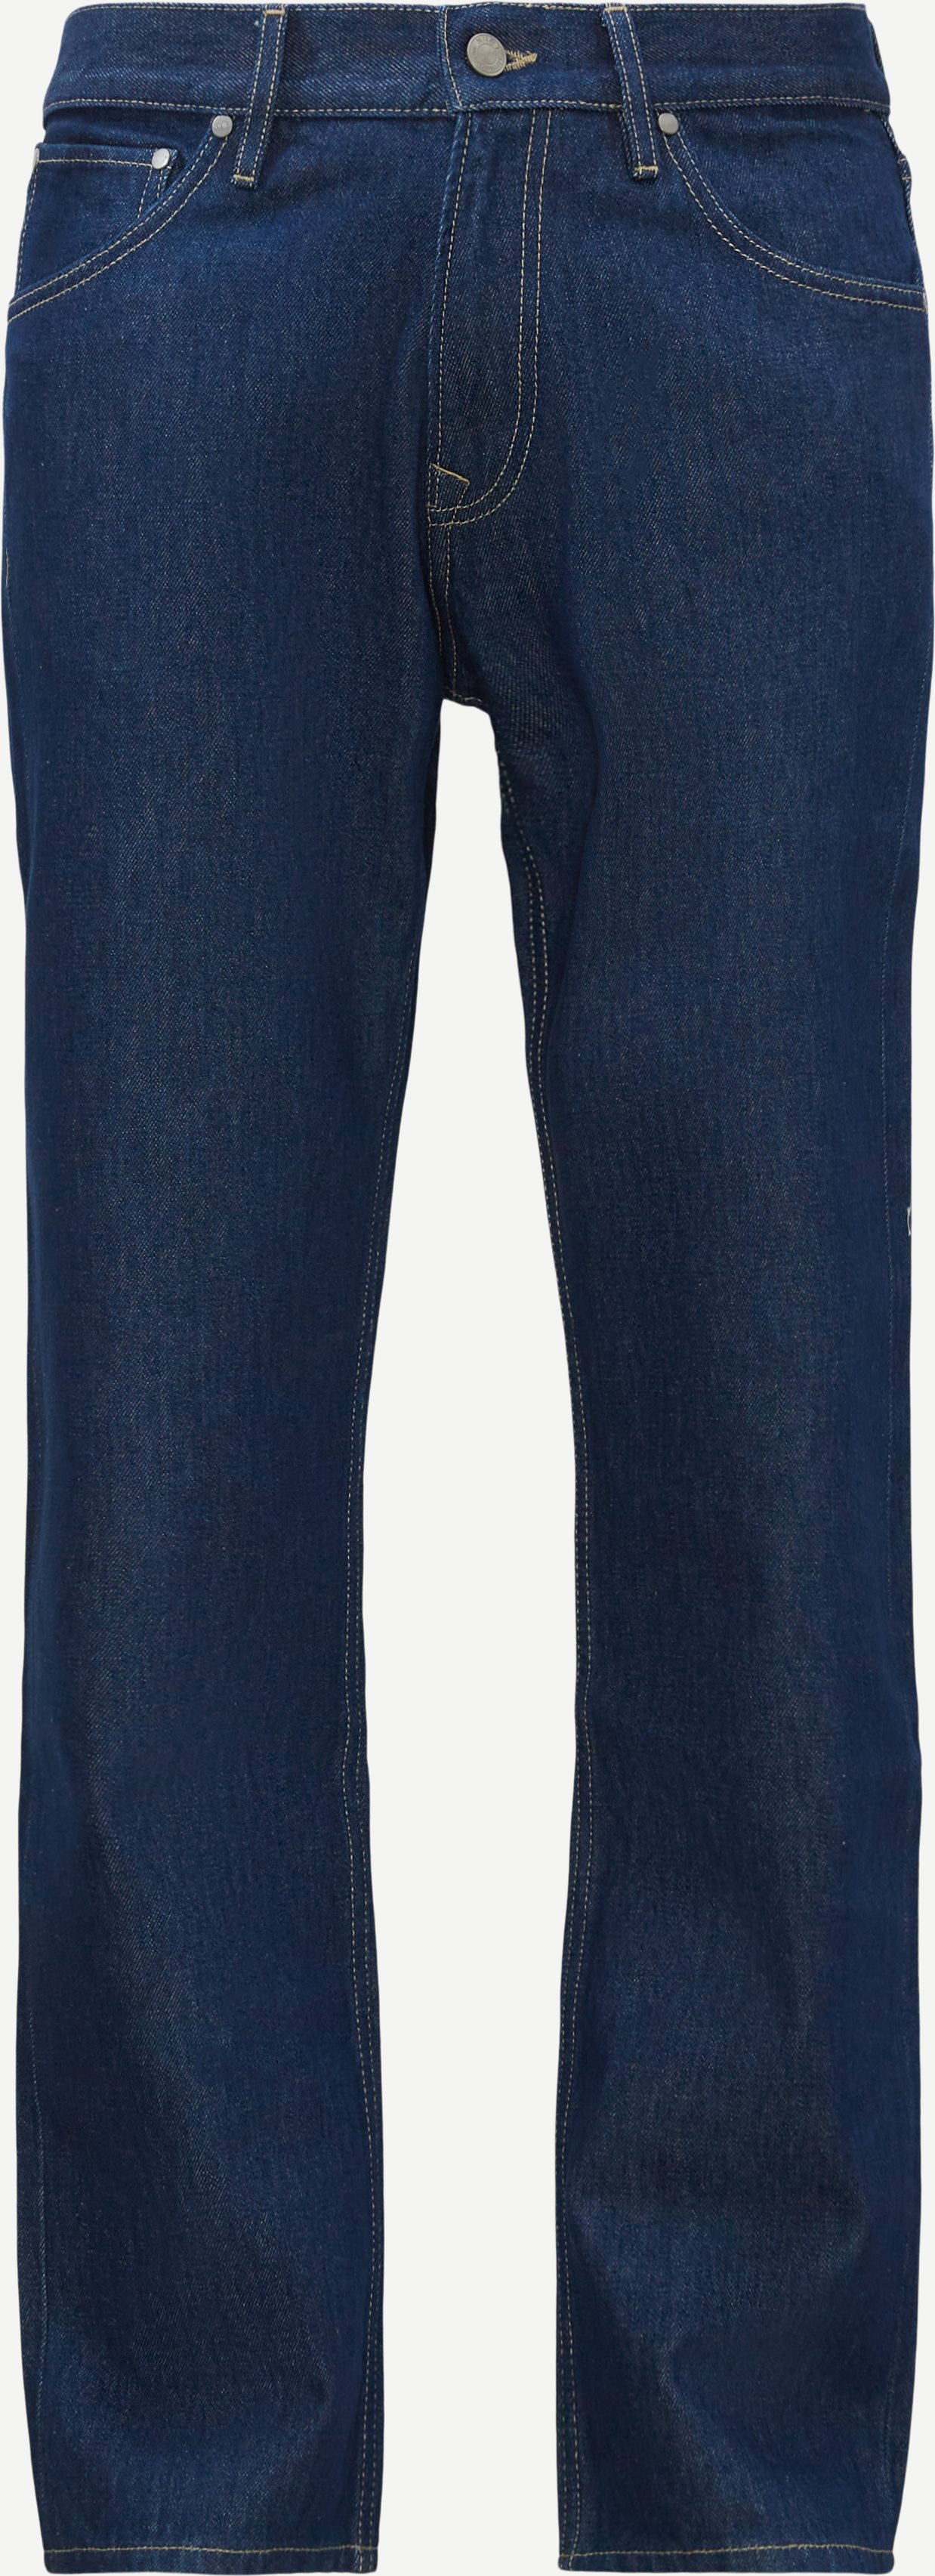 NN07 Jeans 1853 SONNY Denim